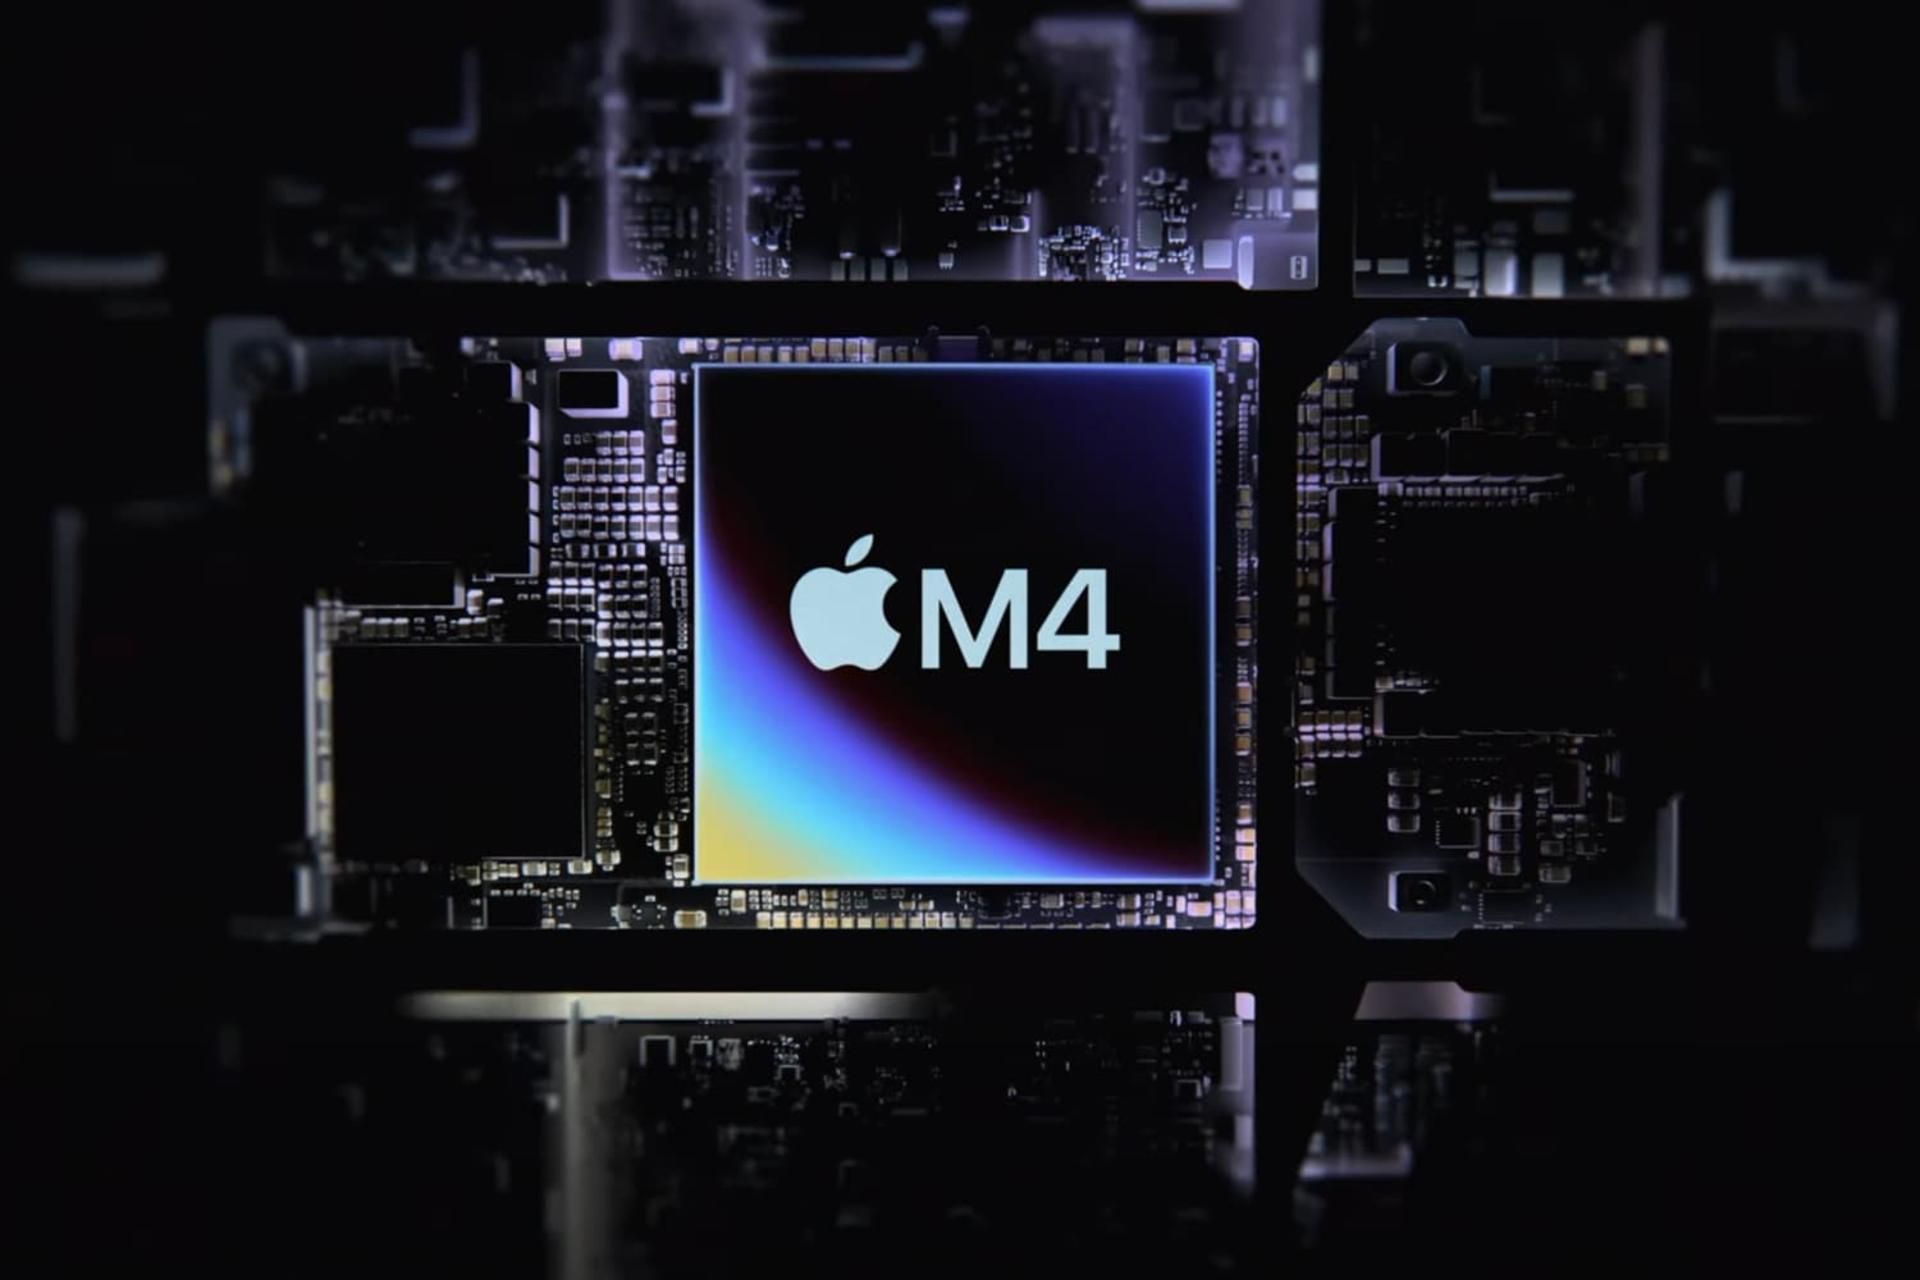 پردازنده M4 اپل ام ۴ در داخل مادربرد